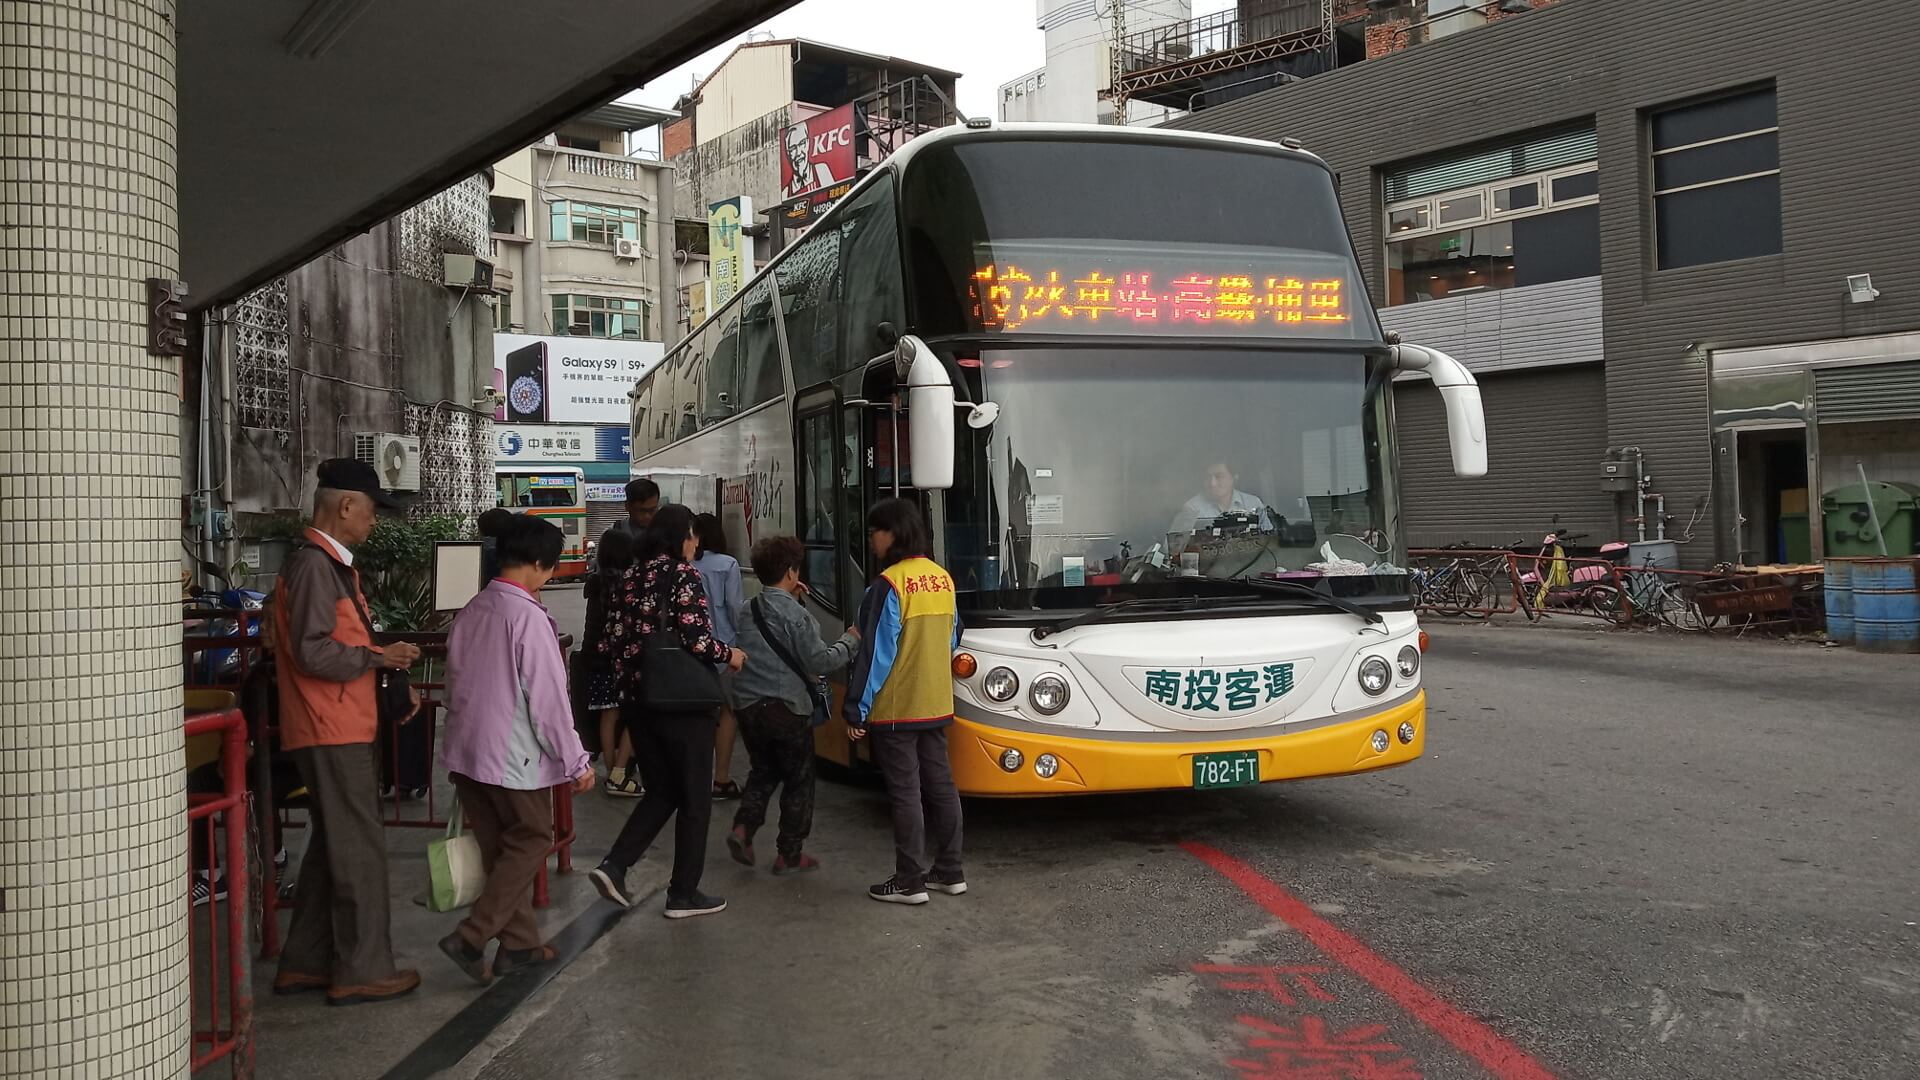 高鐵台中站 ⇔ 埔里，南投客運公車搭乘教學 - G. T. Wang